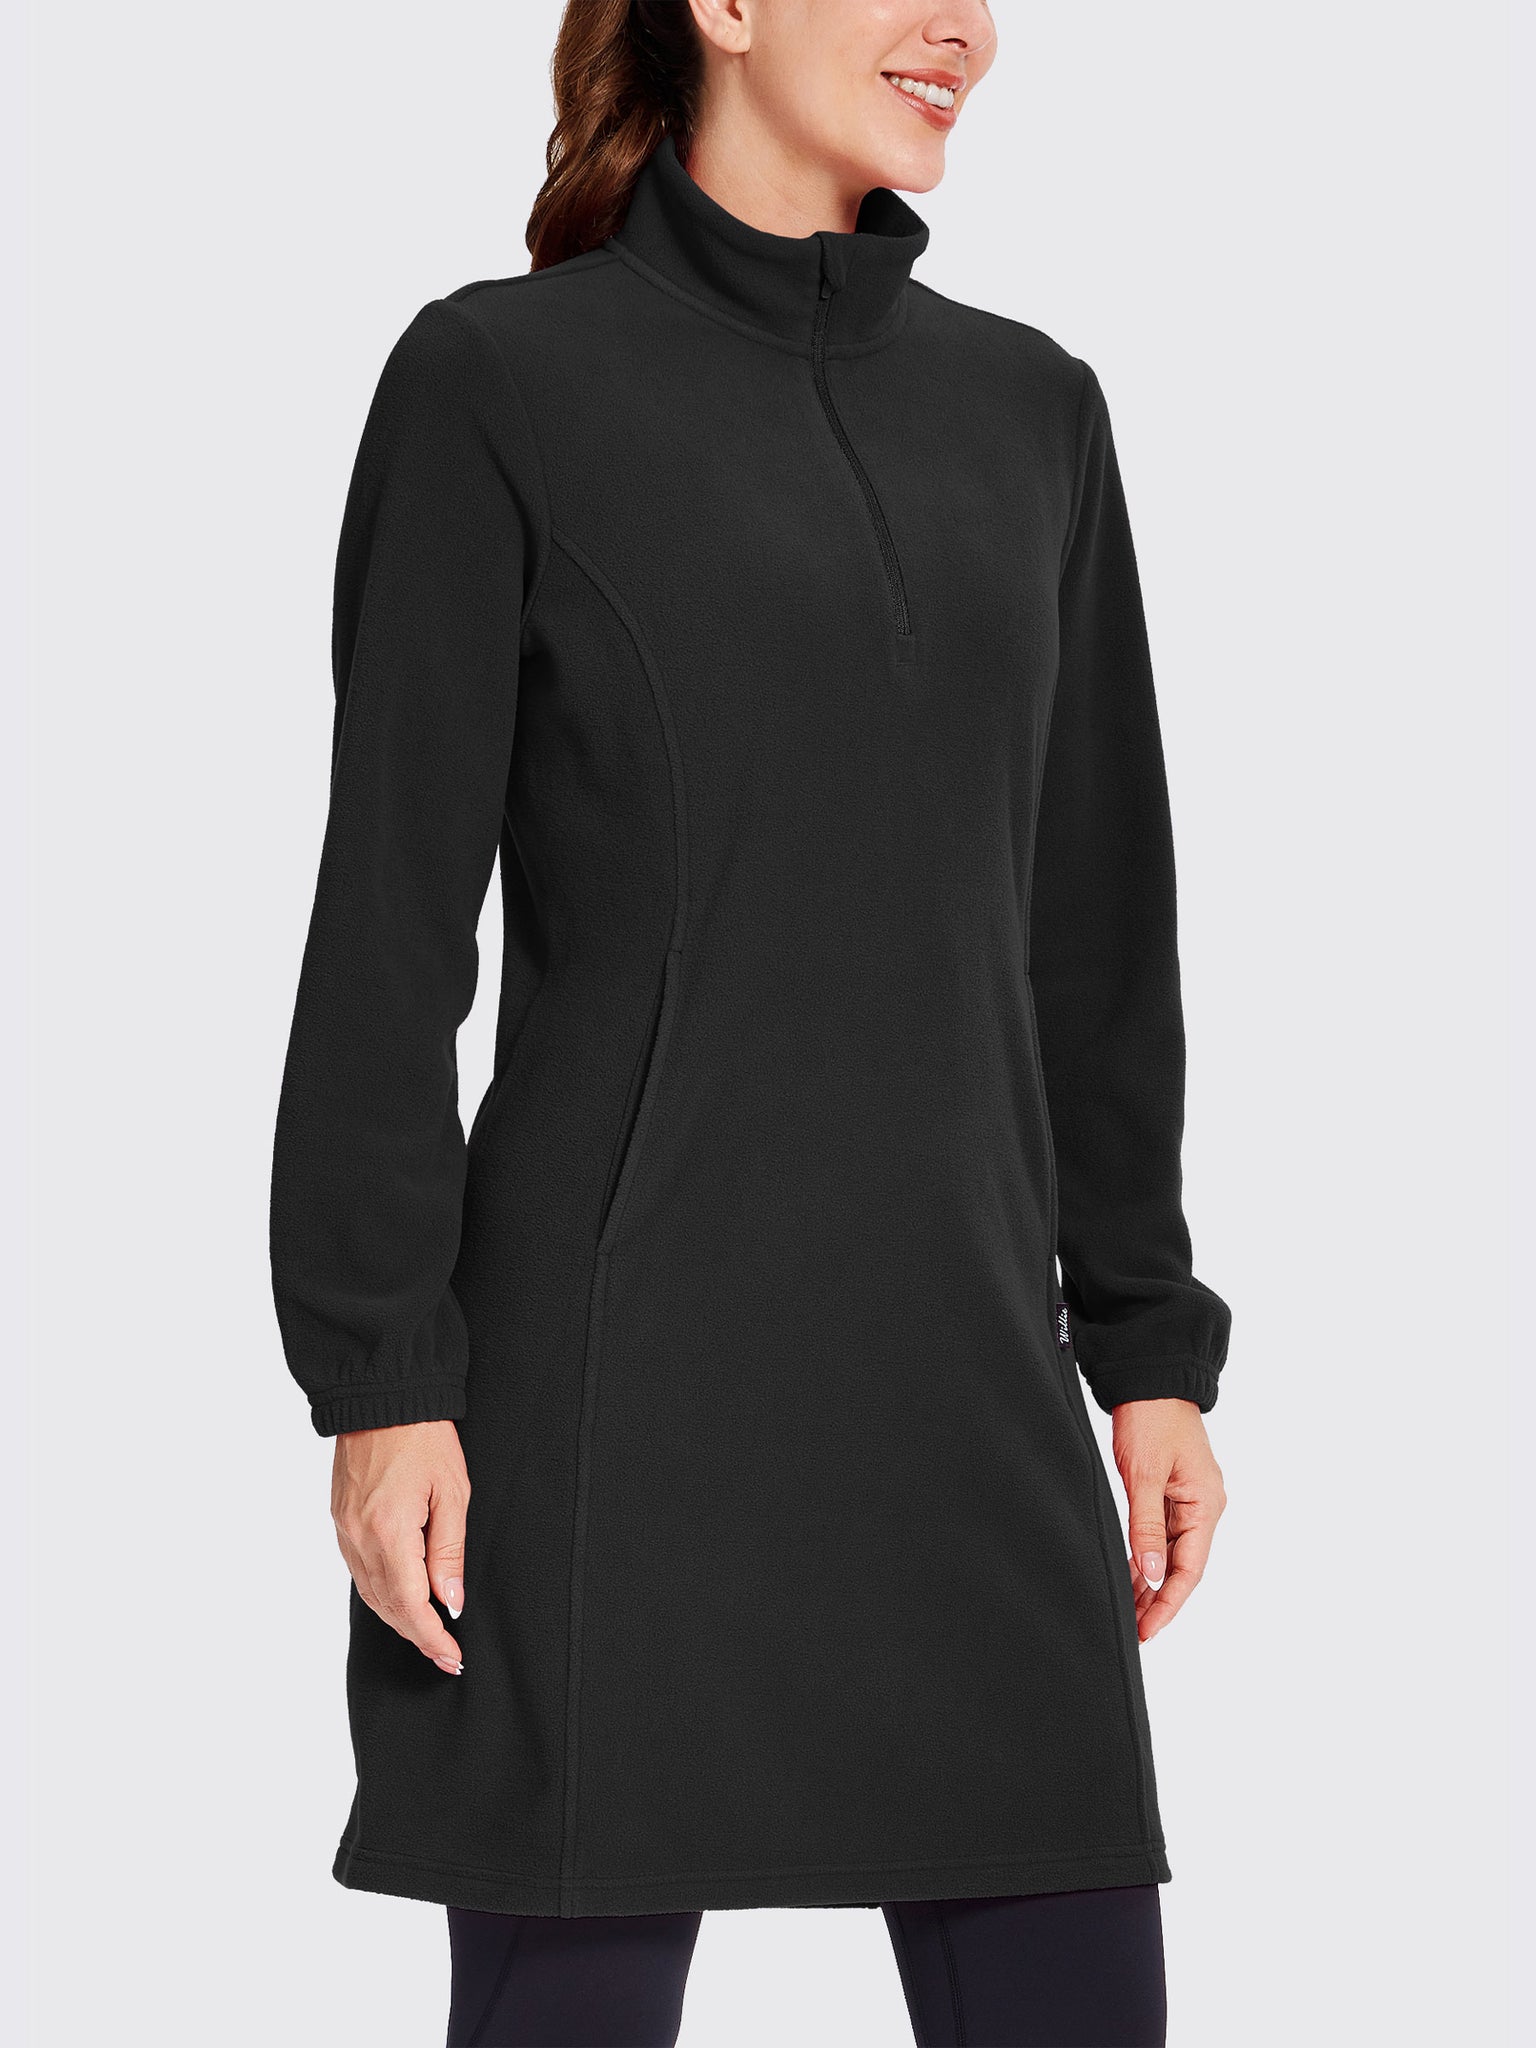 Women's Fleece Long-Sleeve Turtleneck Dress Black1